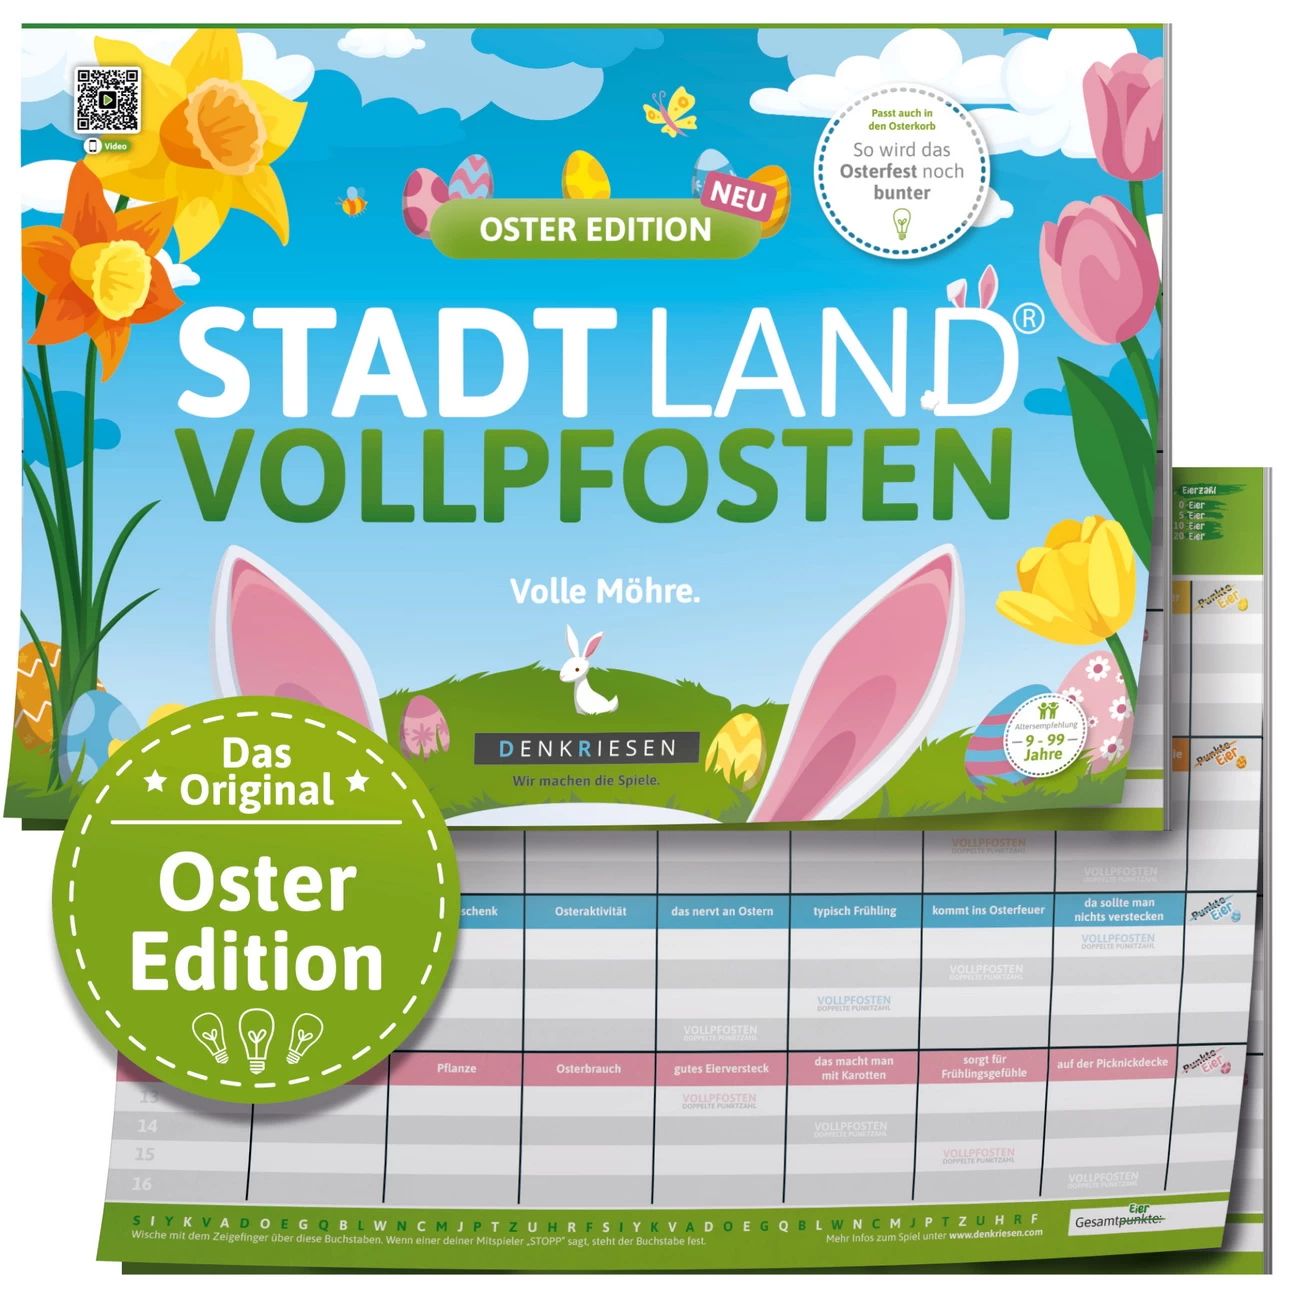 Oster Edition - STADT LAND VOLLPFOSTEN (DENKRIESEN)